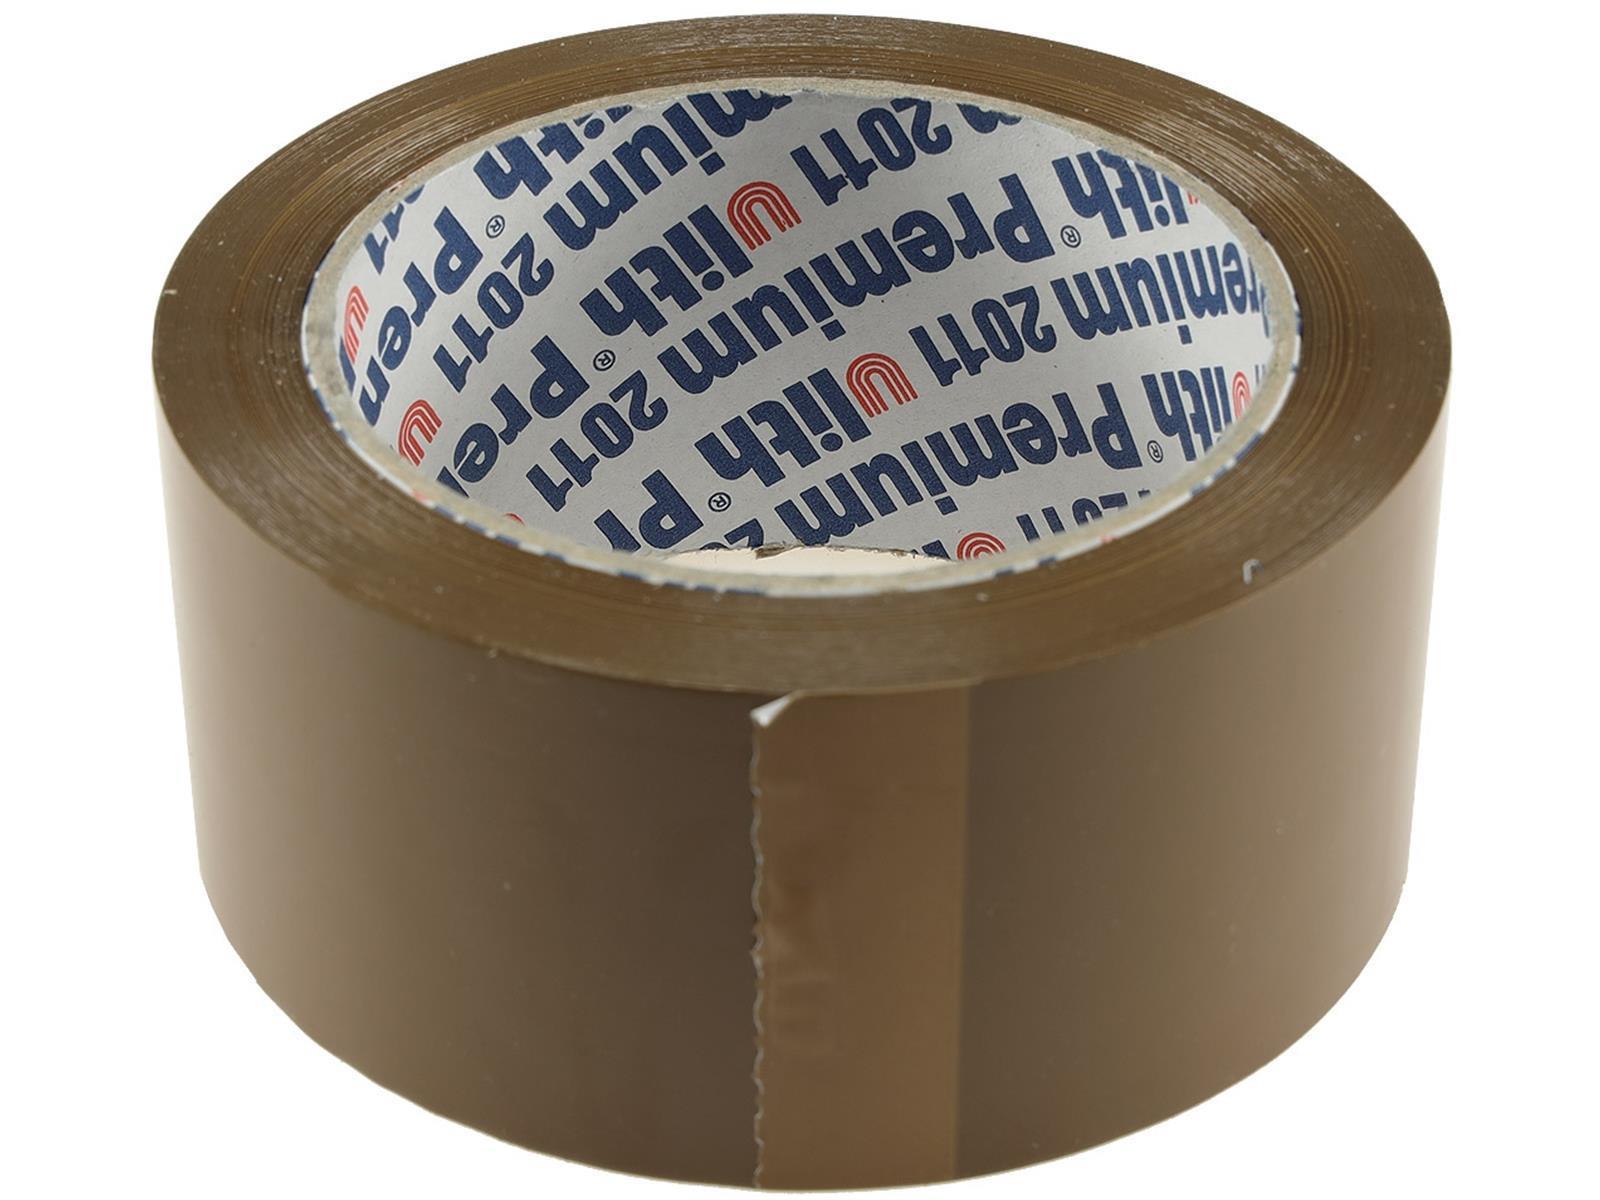 Paket-Klebeband / Packband braun "Profi"Acrylat-Kleber, 50mm x 66m, extra fest